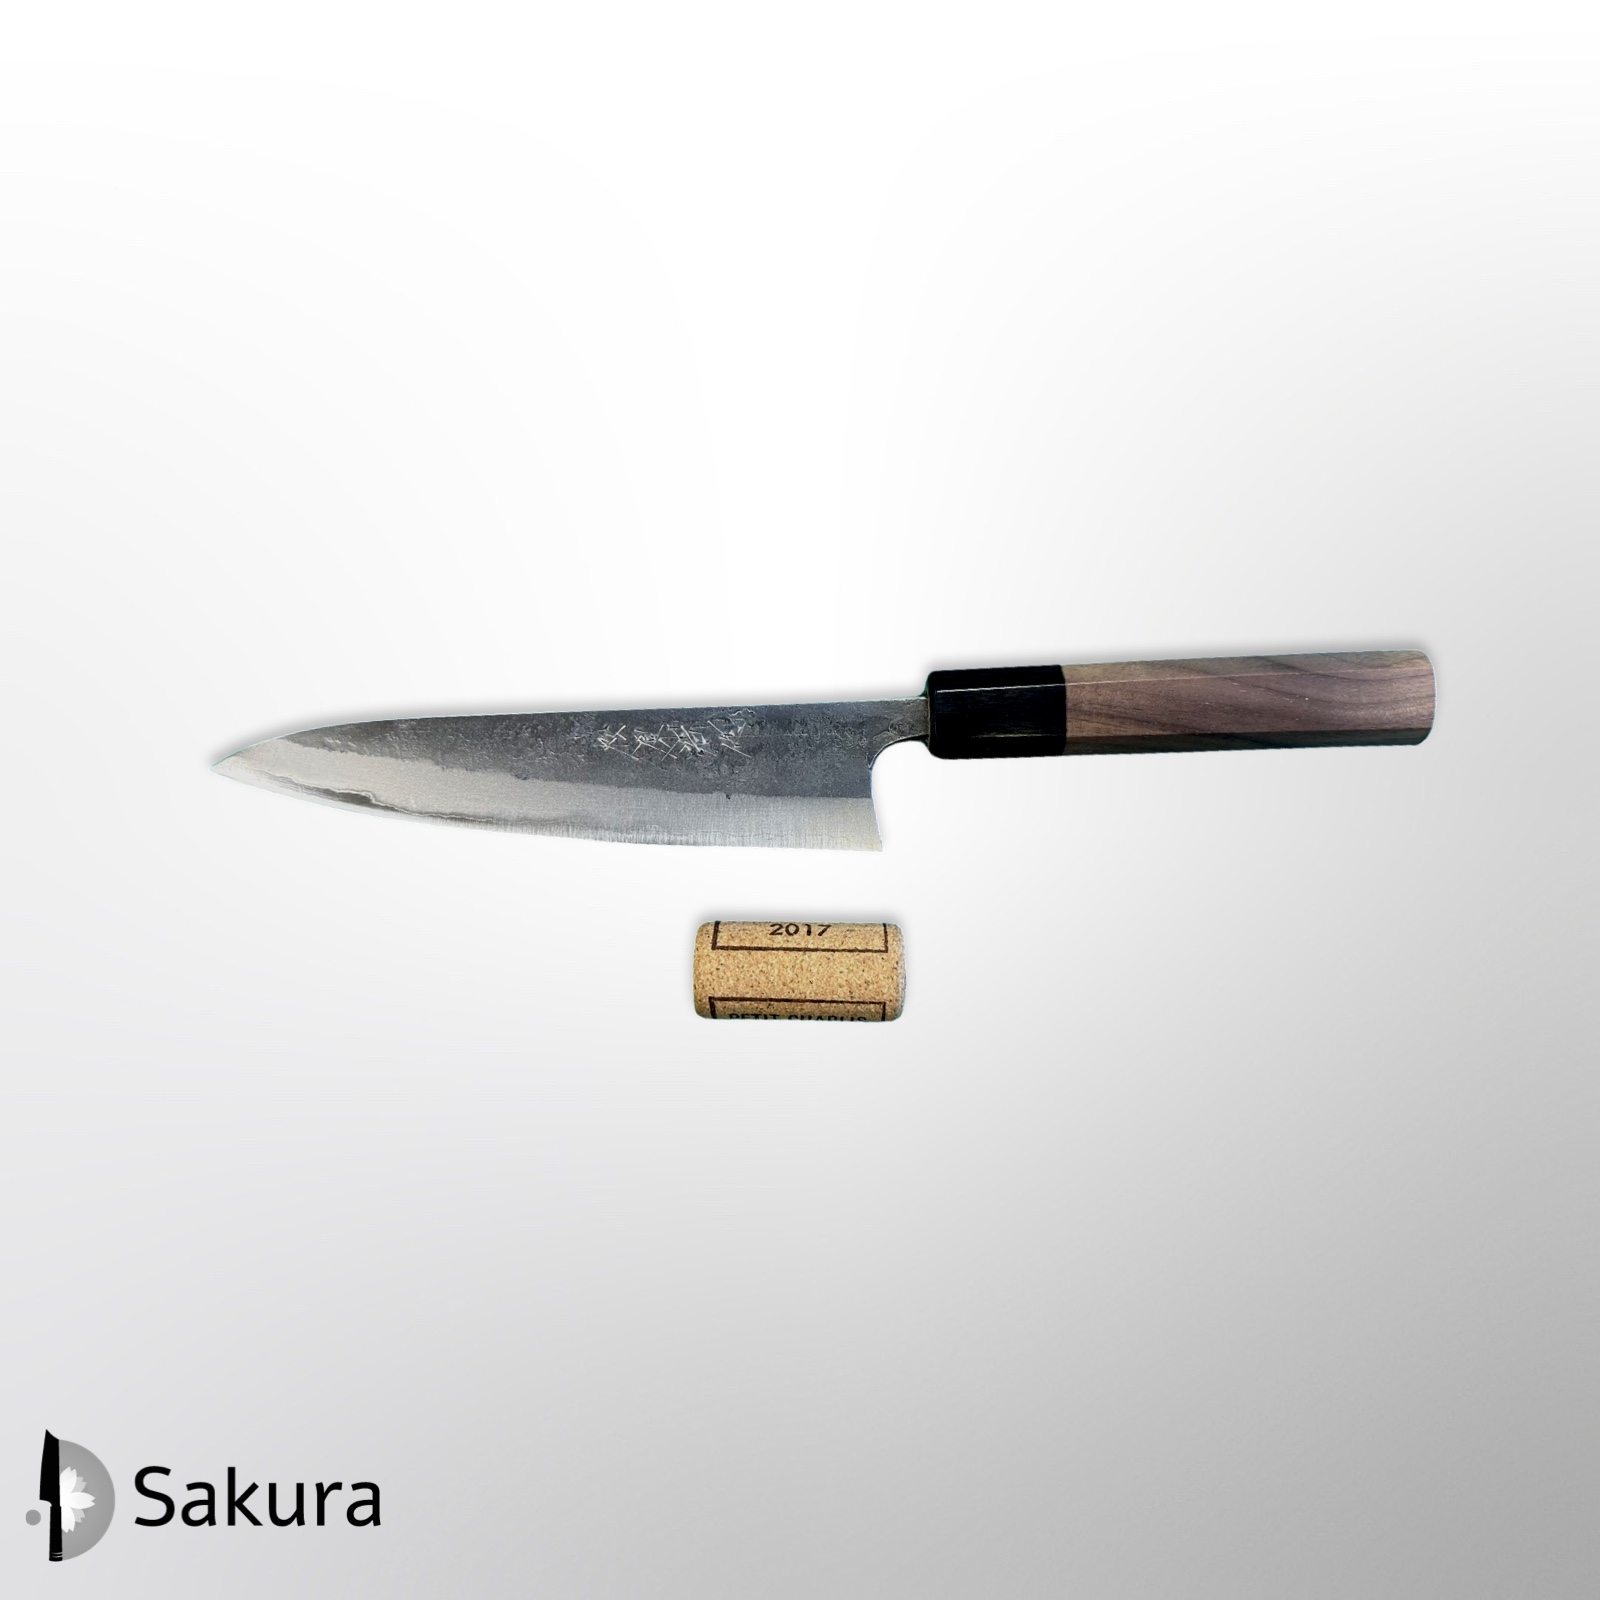 סכין עזר קטנה פטי 150מ״מ פלדת פחמן פחמן אוגמי #2 גימור נשיג׳י ידית מסורתית עץ אגוז מתומנת מאצוברה יפן [SKMATSTKKNBP1502442]